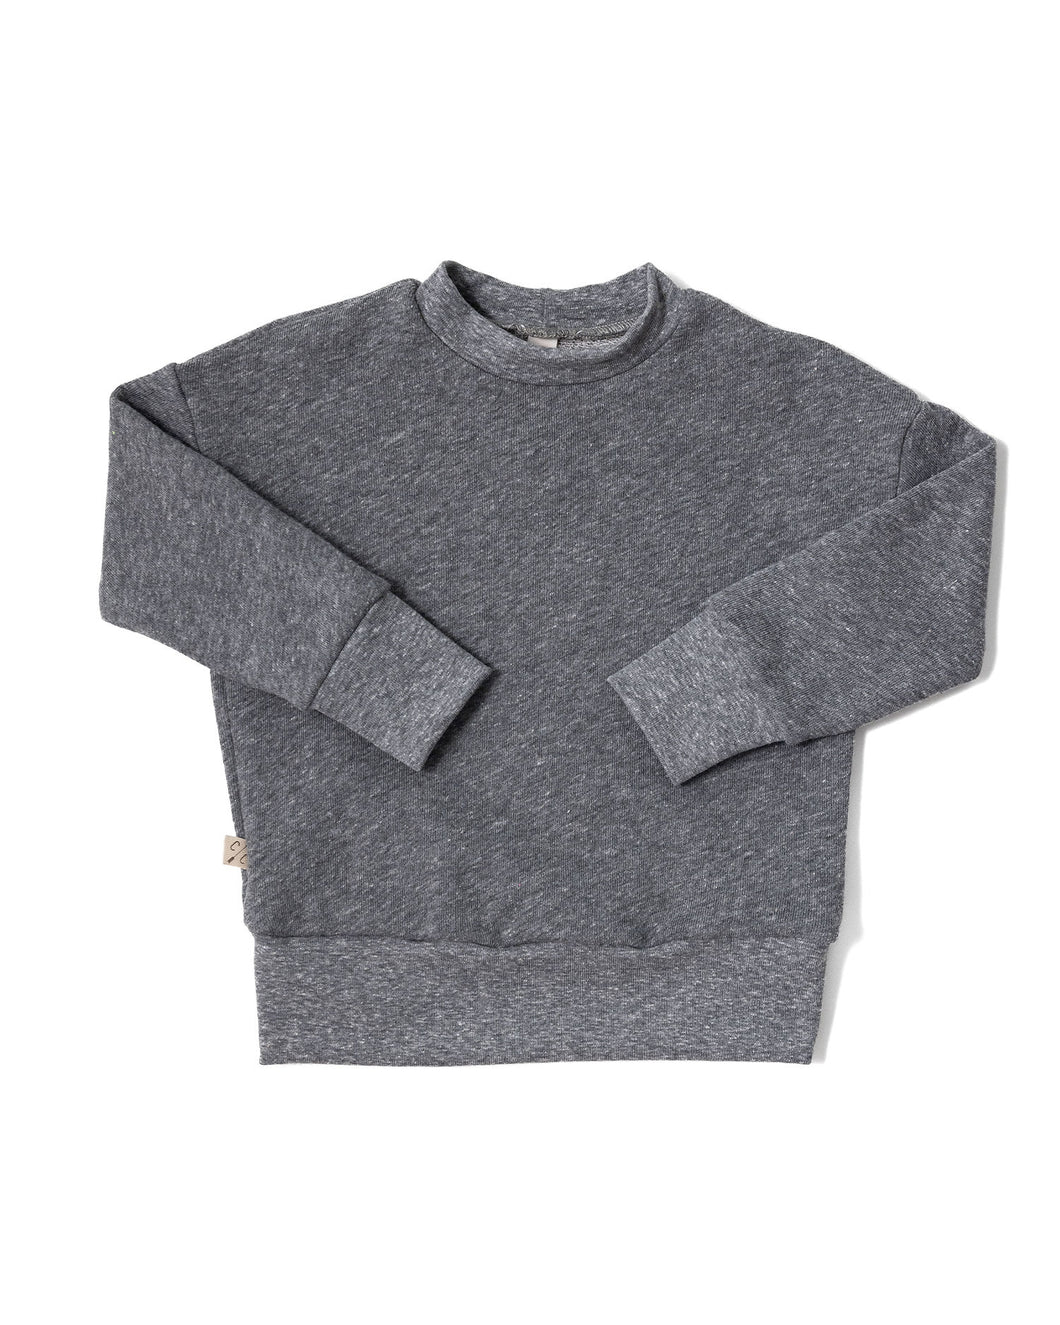 boxy sweatshirt - heather gray